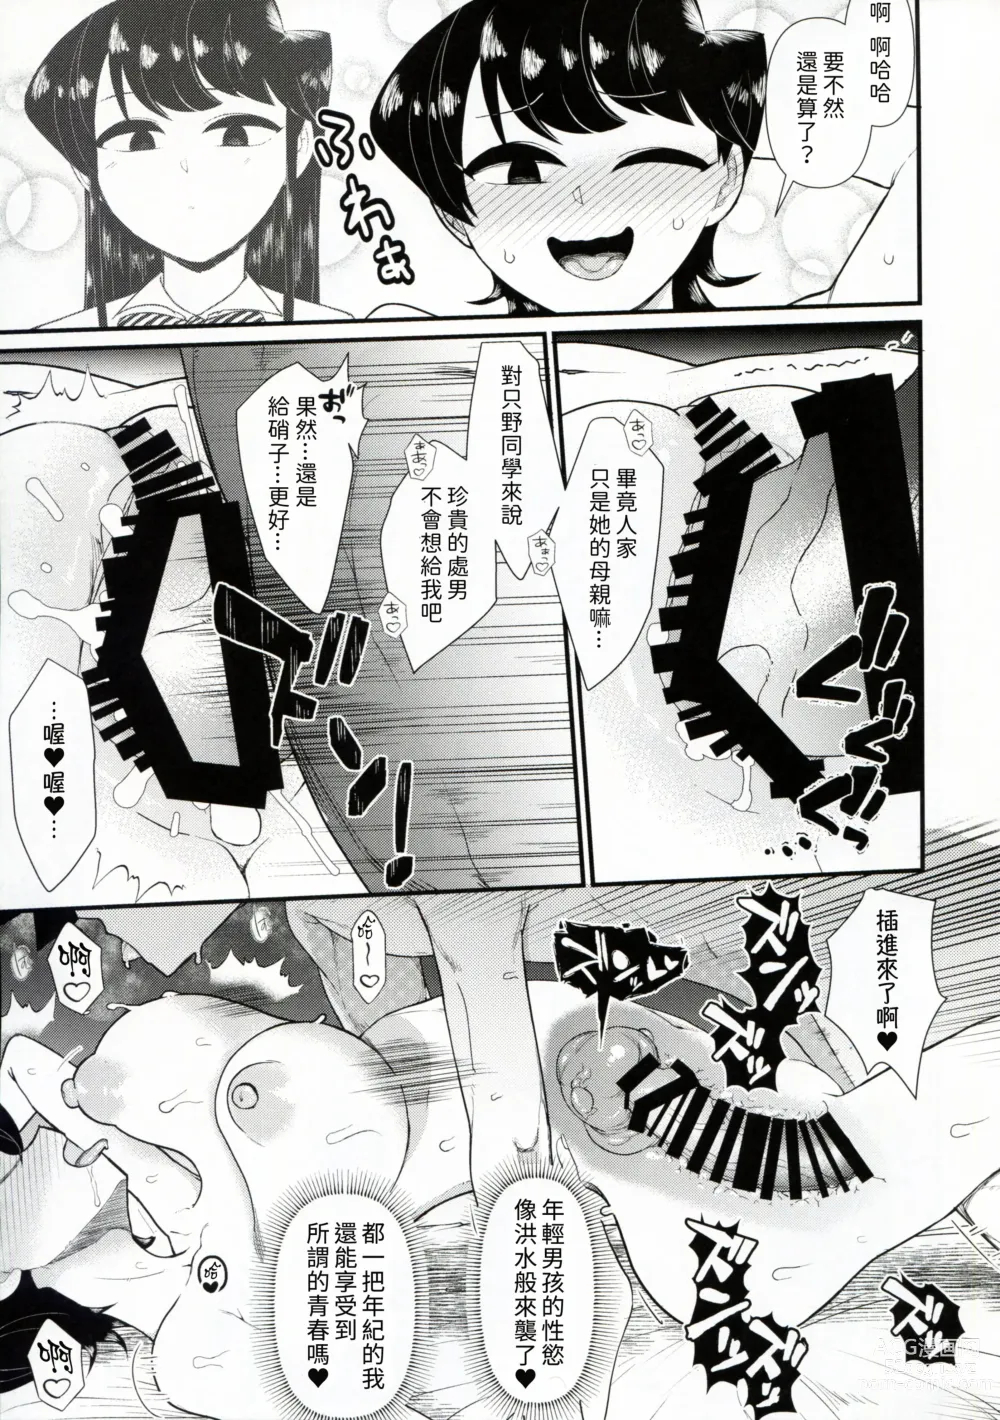 Page 15 of doujinshi Komi-mama ha, kara mi zake desu.